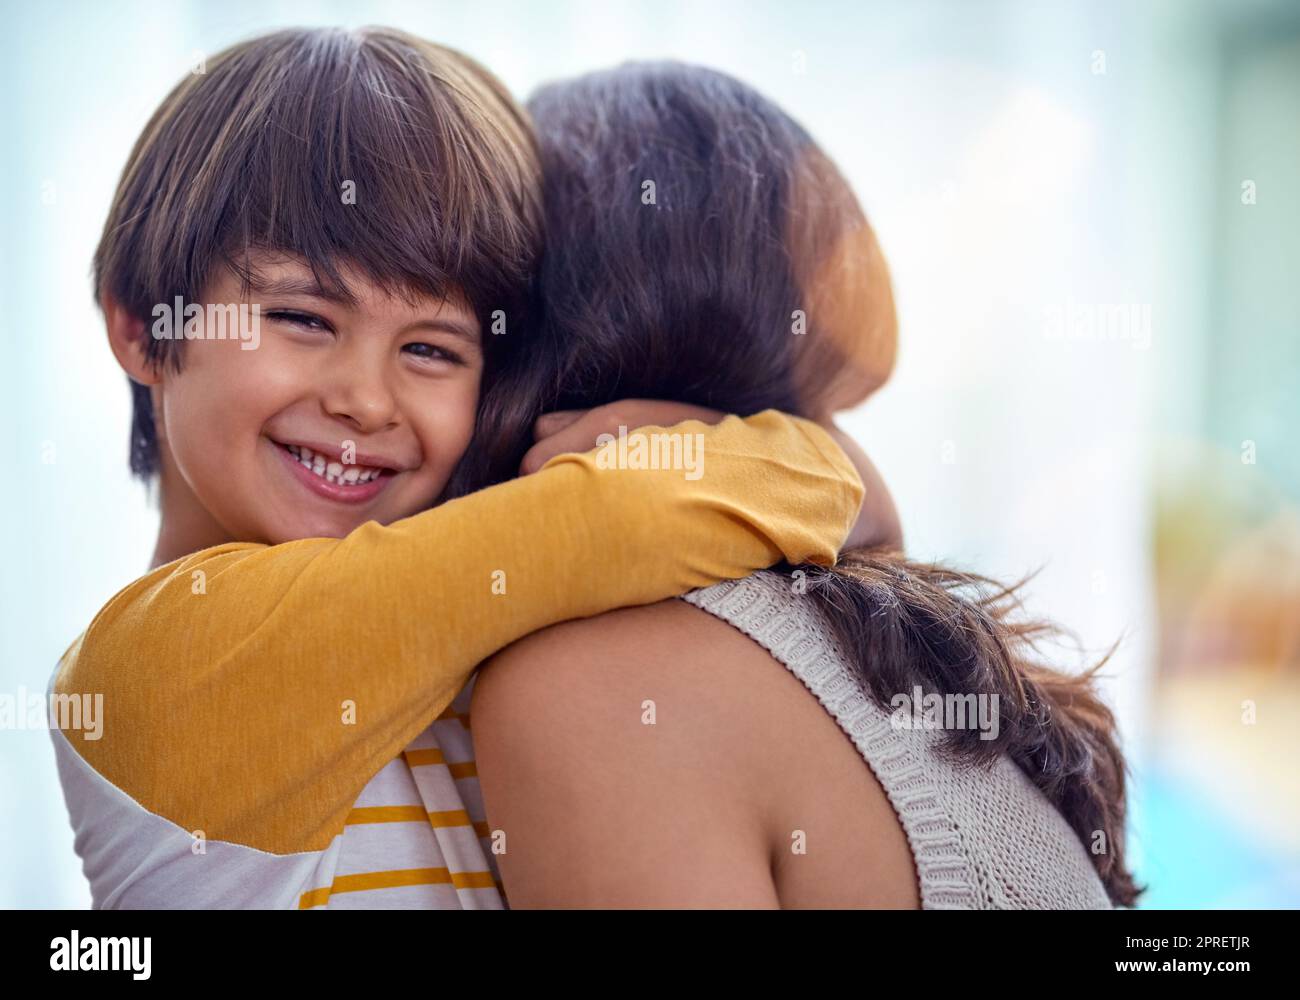 Die Mutter Sohn Verbindung, was für eine schöne Bindung. Ein entzückender kleiner Junge liebevoll umarmt seine Mutter zu Hause. Stockfoto